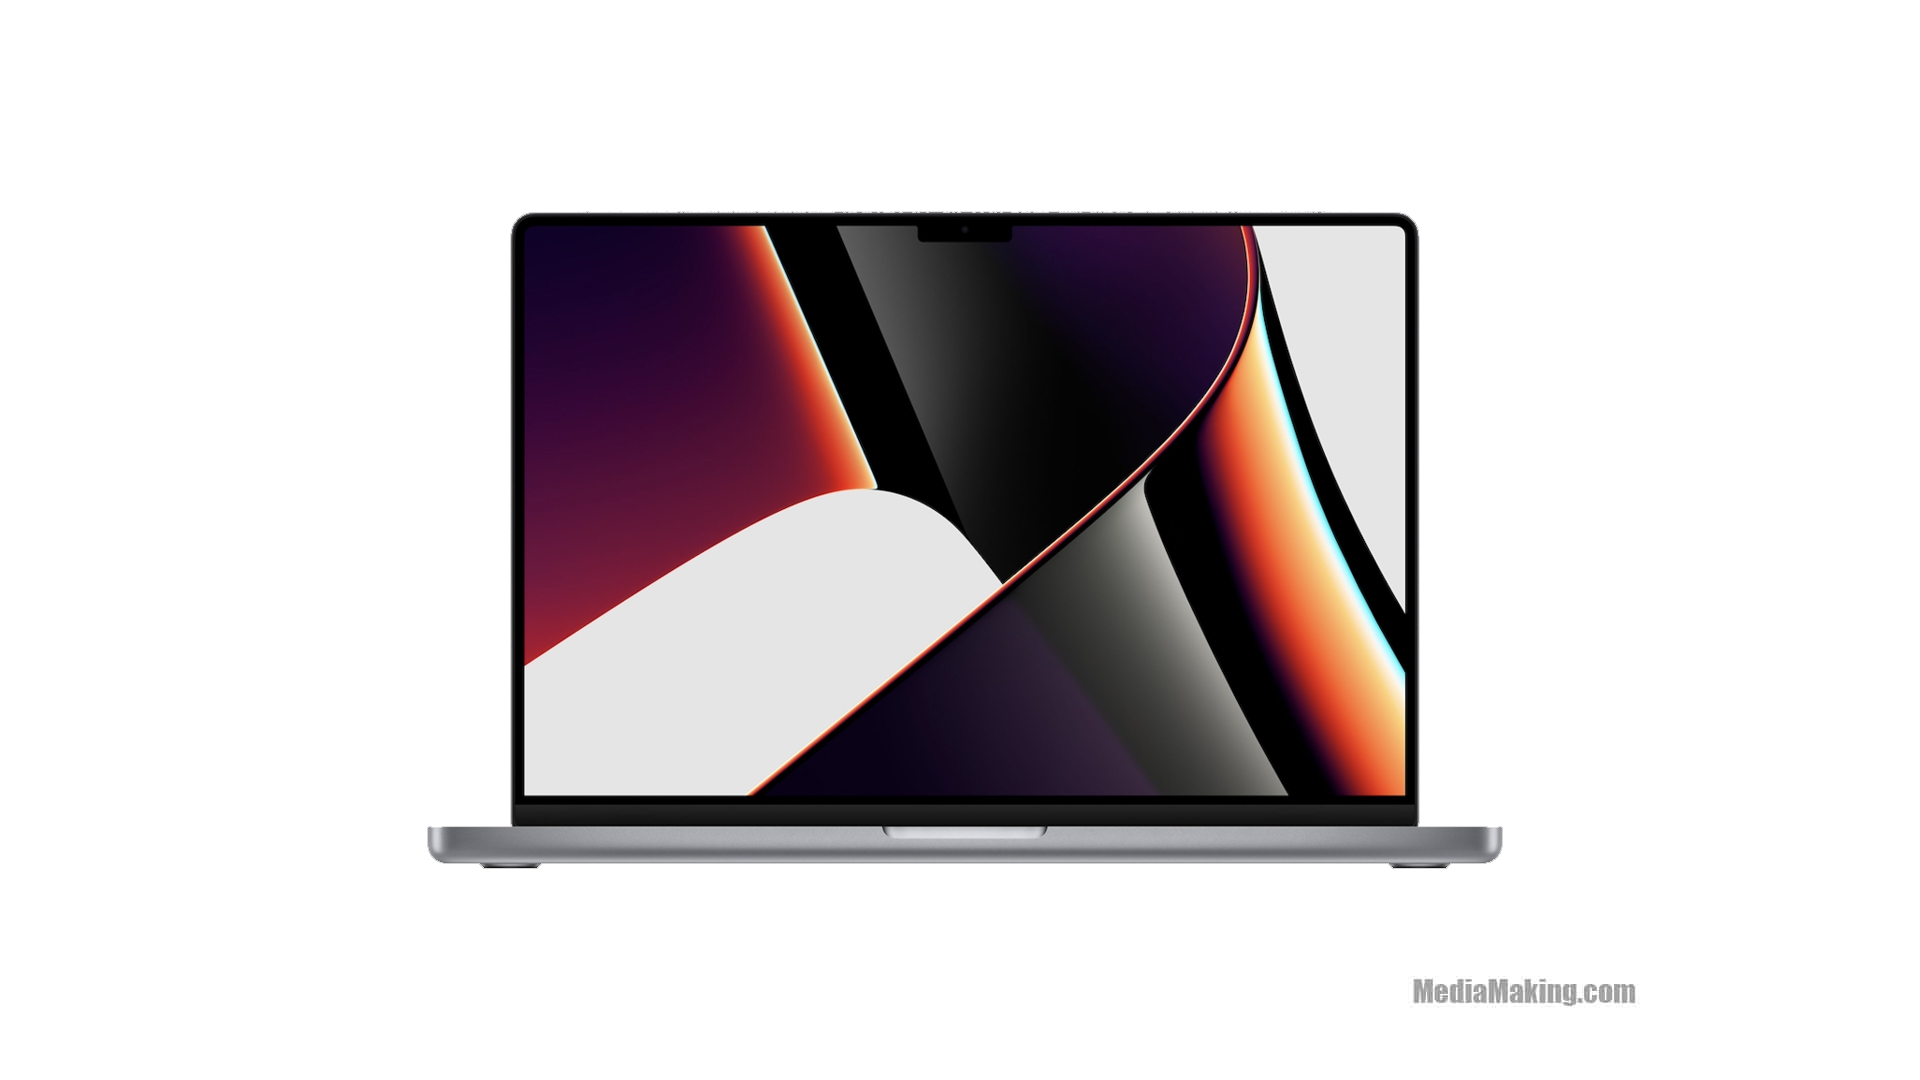 MacBook Pro 16" + Capture One